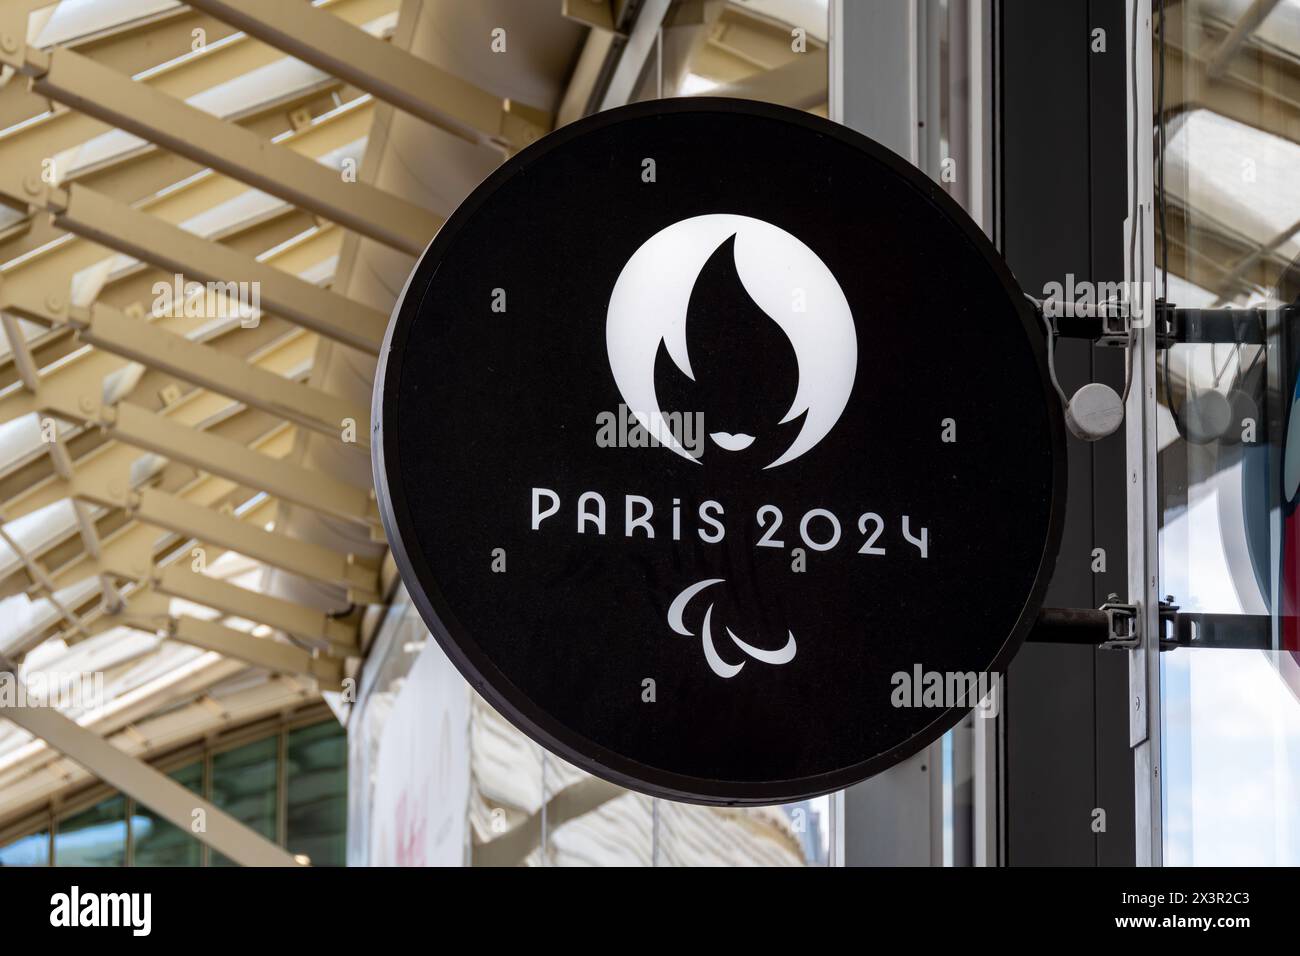 Segno del negozio ufficiale dei Giochi Olimpici e Paralimpici estivi di Parigi 2024 con il logo e il simbolo dei Giochi Paralimpici, Parigi, Francia Foto Stock